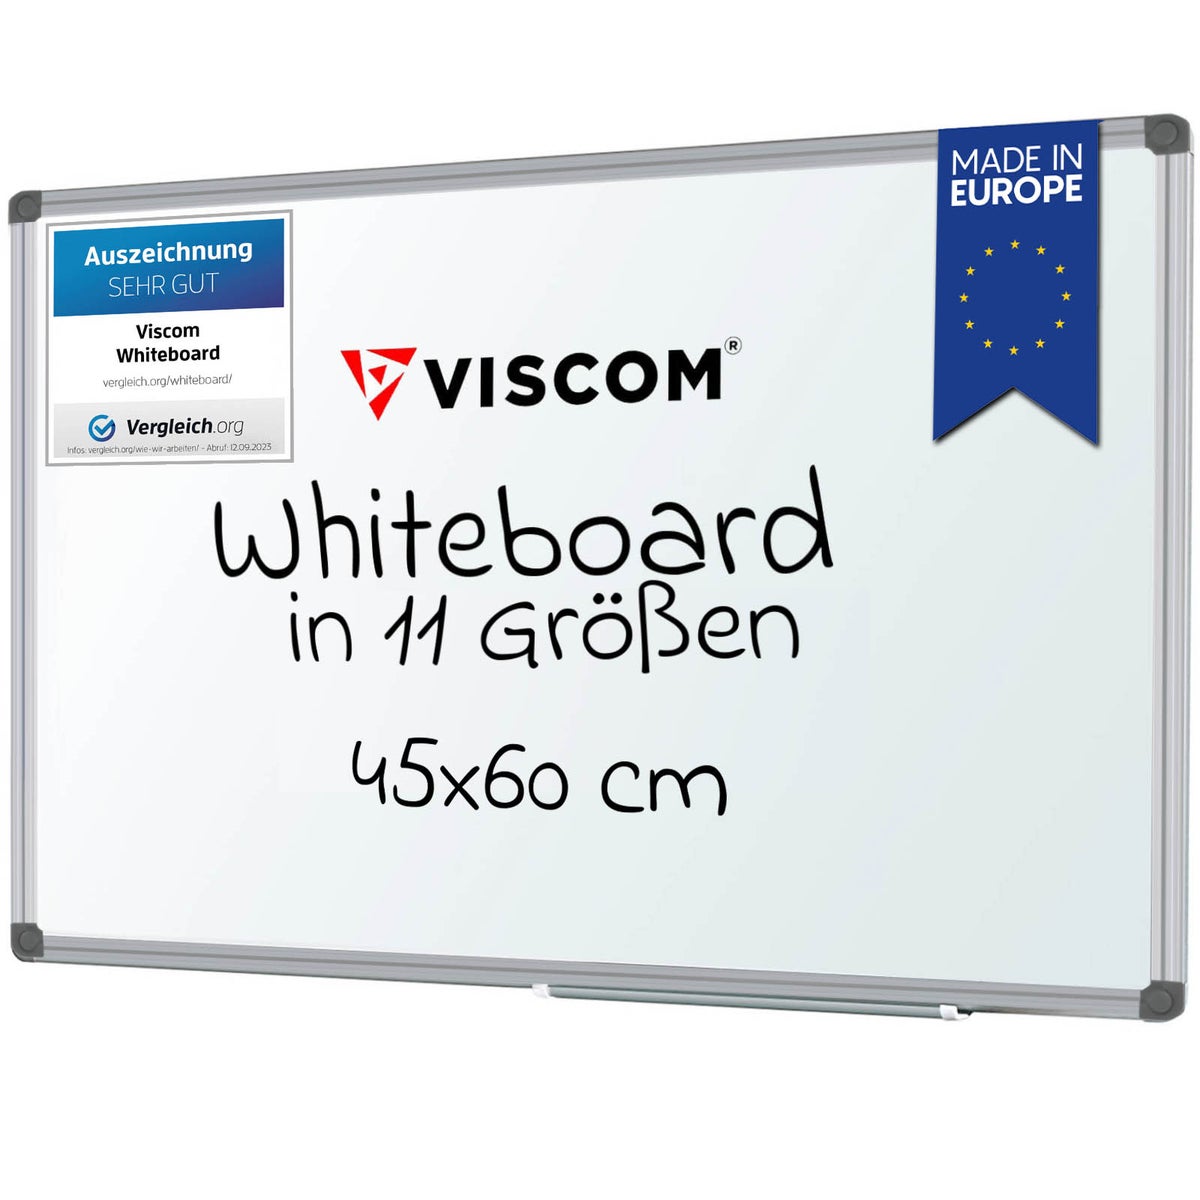 VISCOM Whiteboard magnetisch - 45 x 60 cm - Magnettafel für Büro & Zuhause - Magnetwand kratzfest & beschreibbar - mit Aluminium-Rahmen - für Hoch- und Querformat